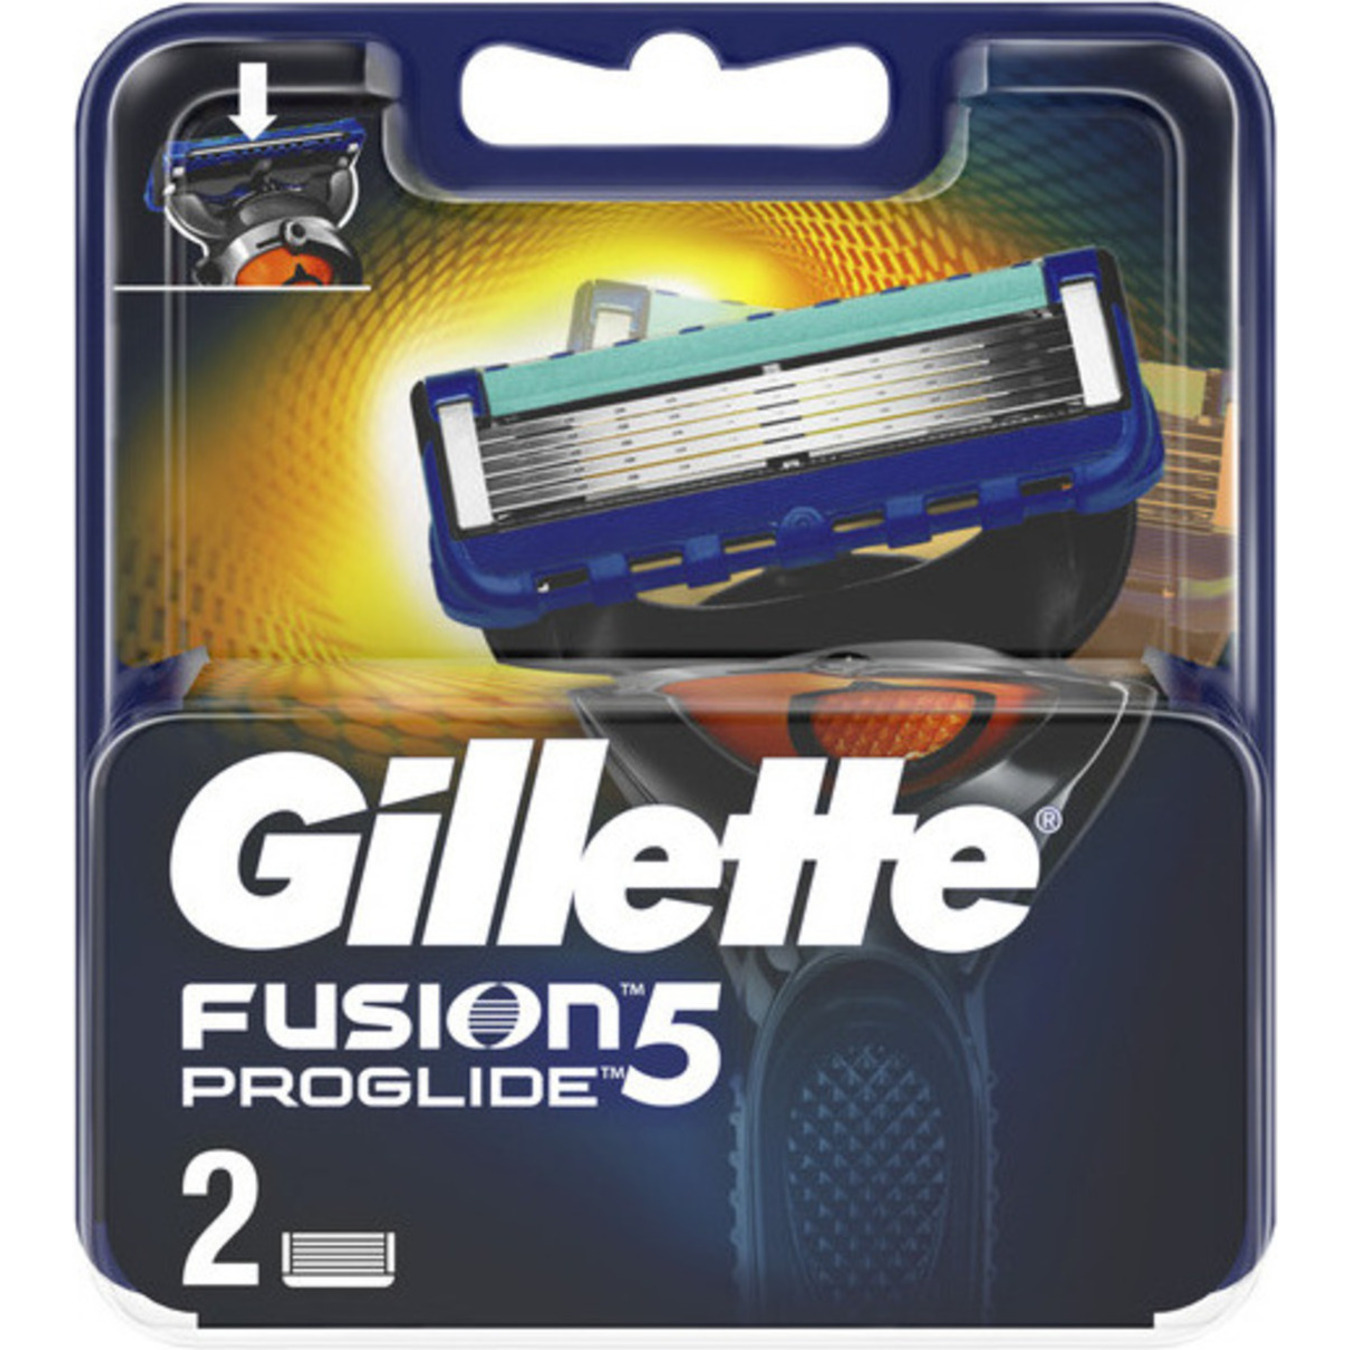 Картриджи Gillette Fusion 5 ProGlide для бритья сменные 2шт